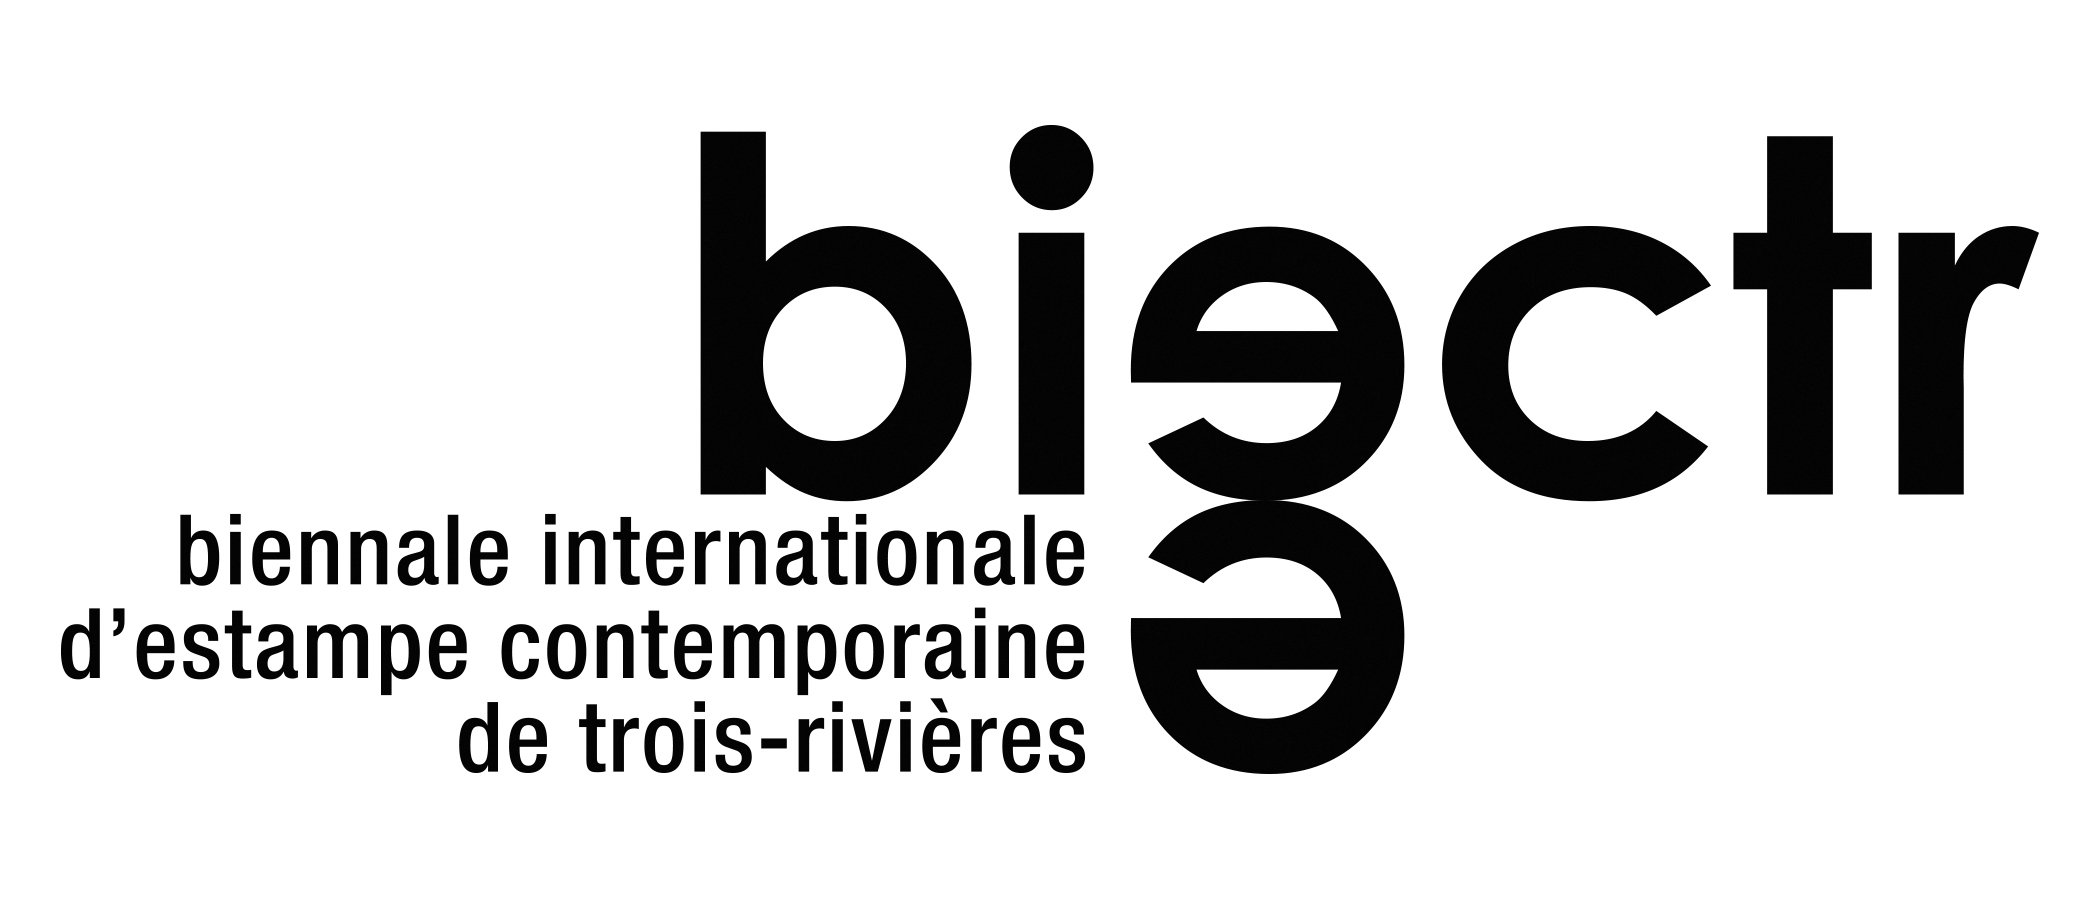 BIECTR-Logo-Noir (1).jpg